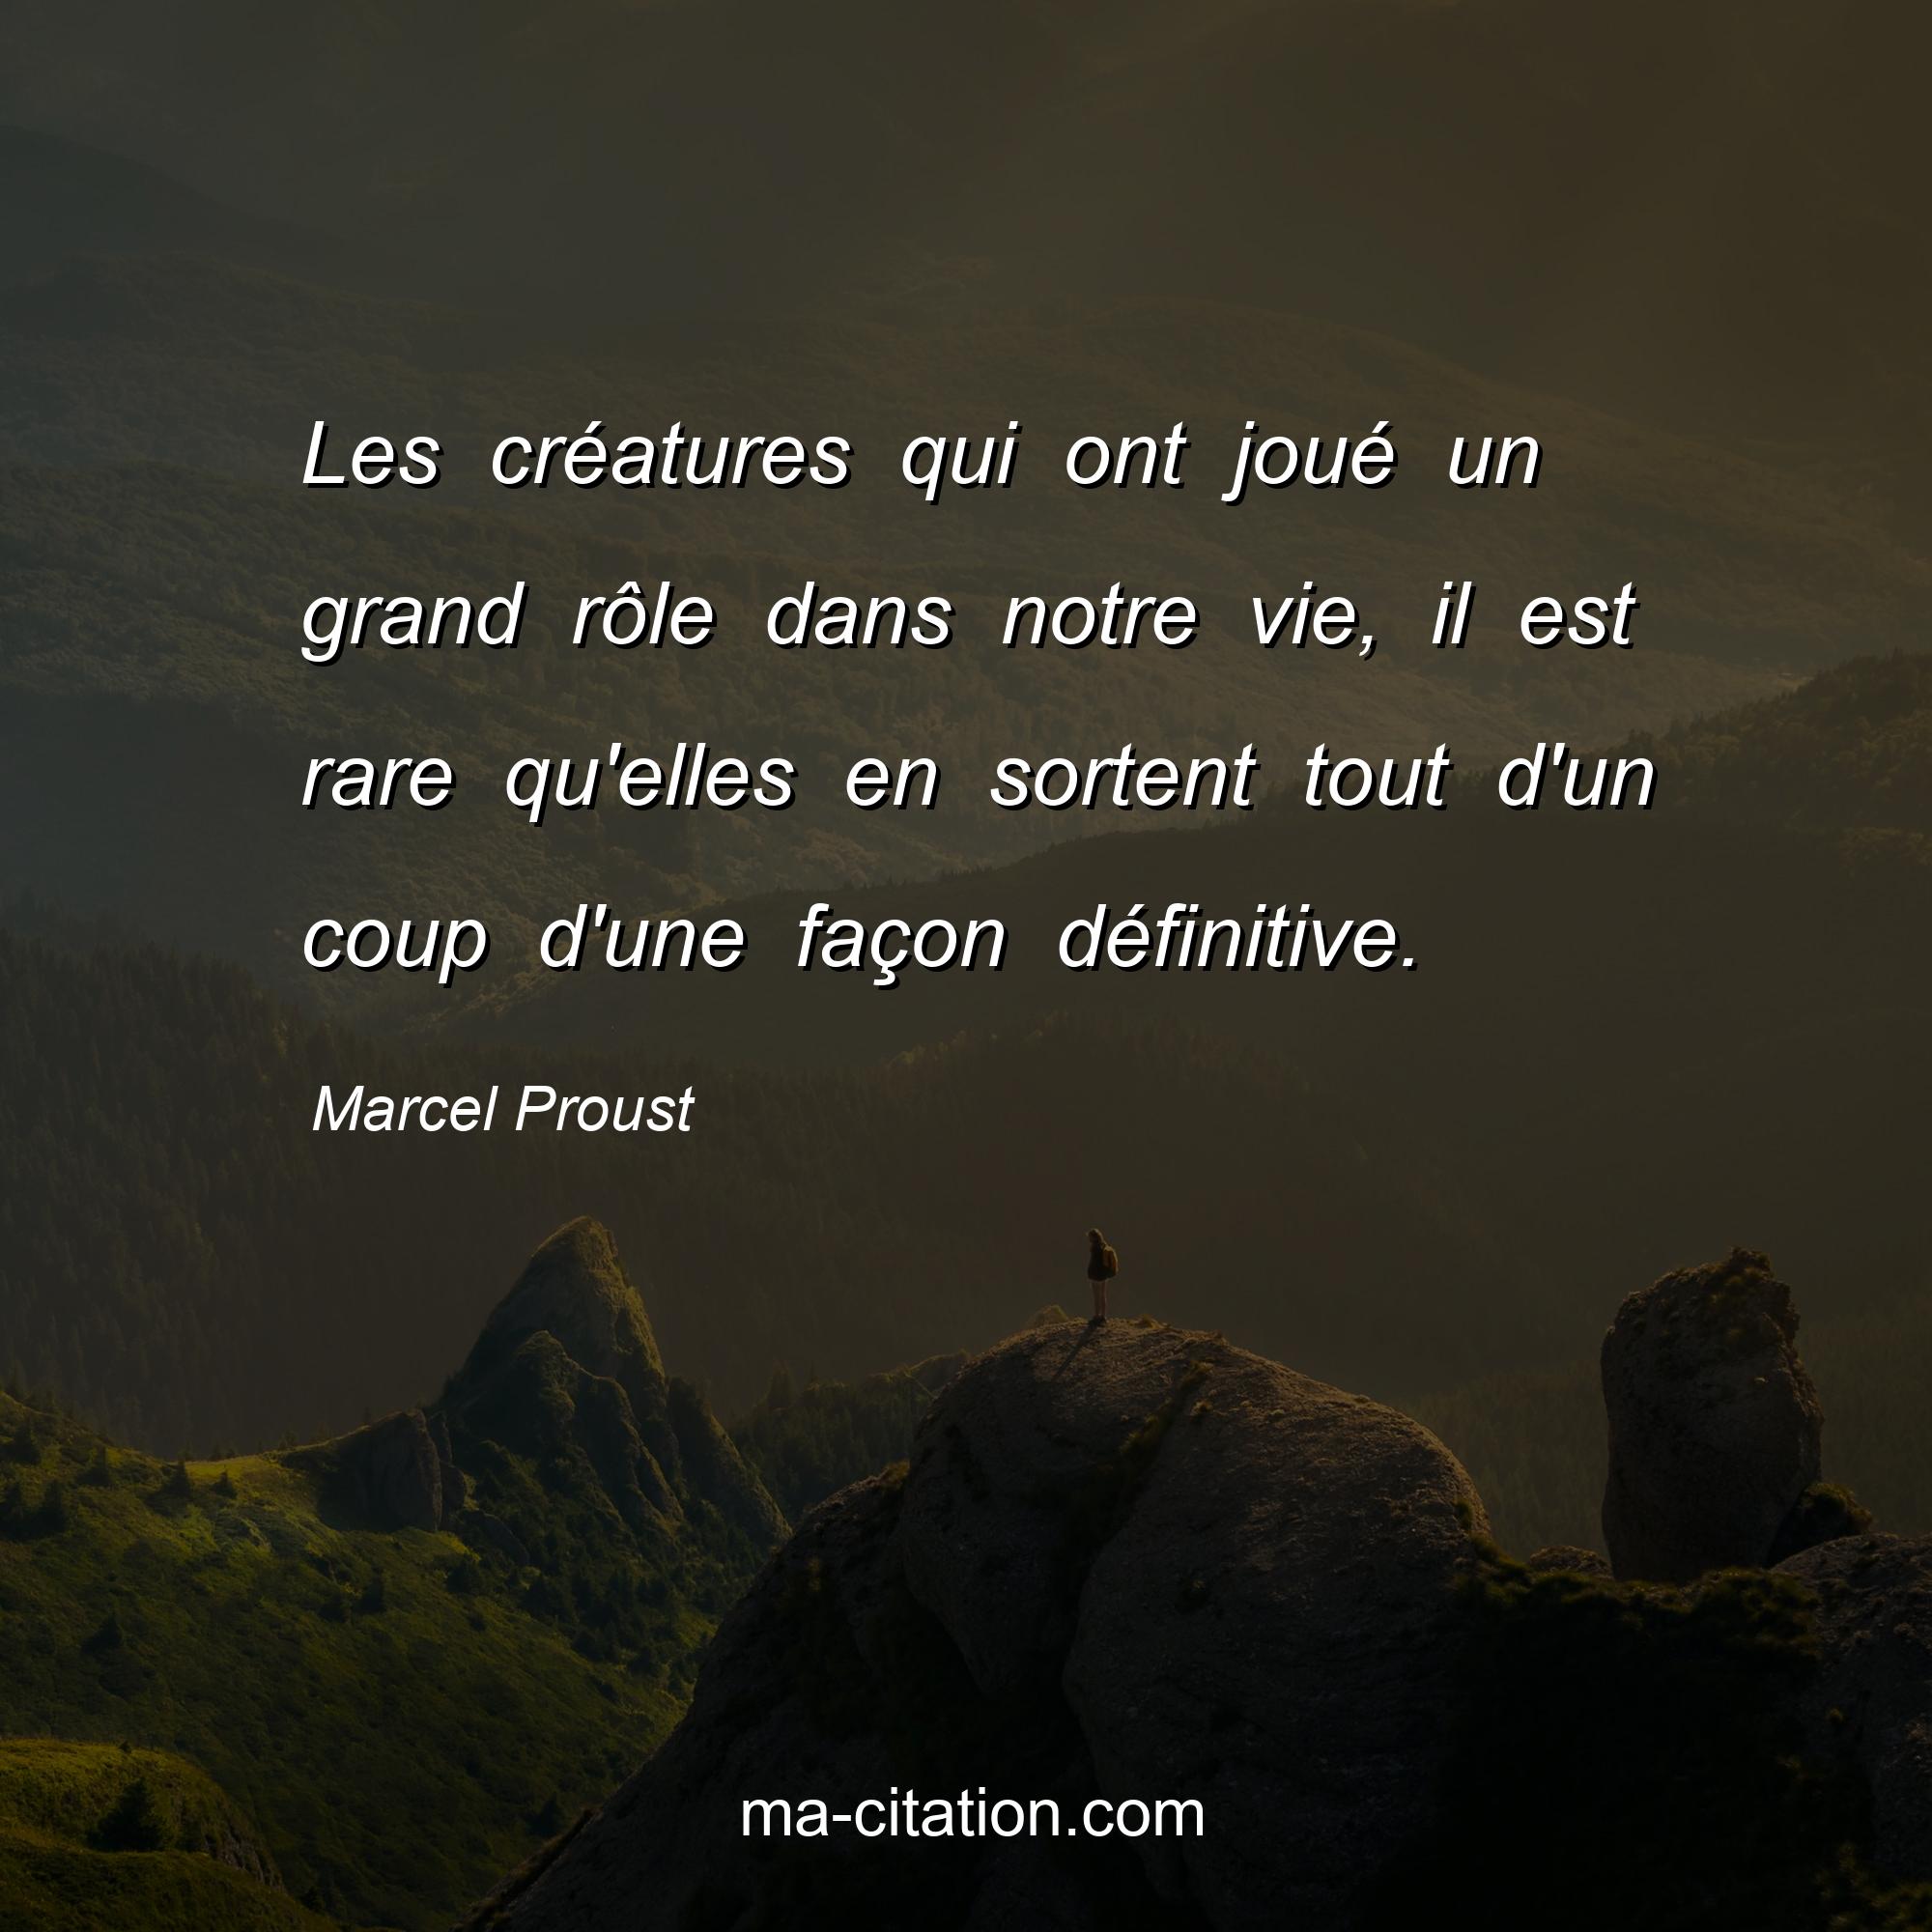 Marcel Proust : Les créatures qui ont joué un grand rôle dans notre vie, il est rare qu'elles en sortent tout d'un coup d'une façon définitive.